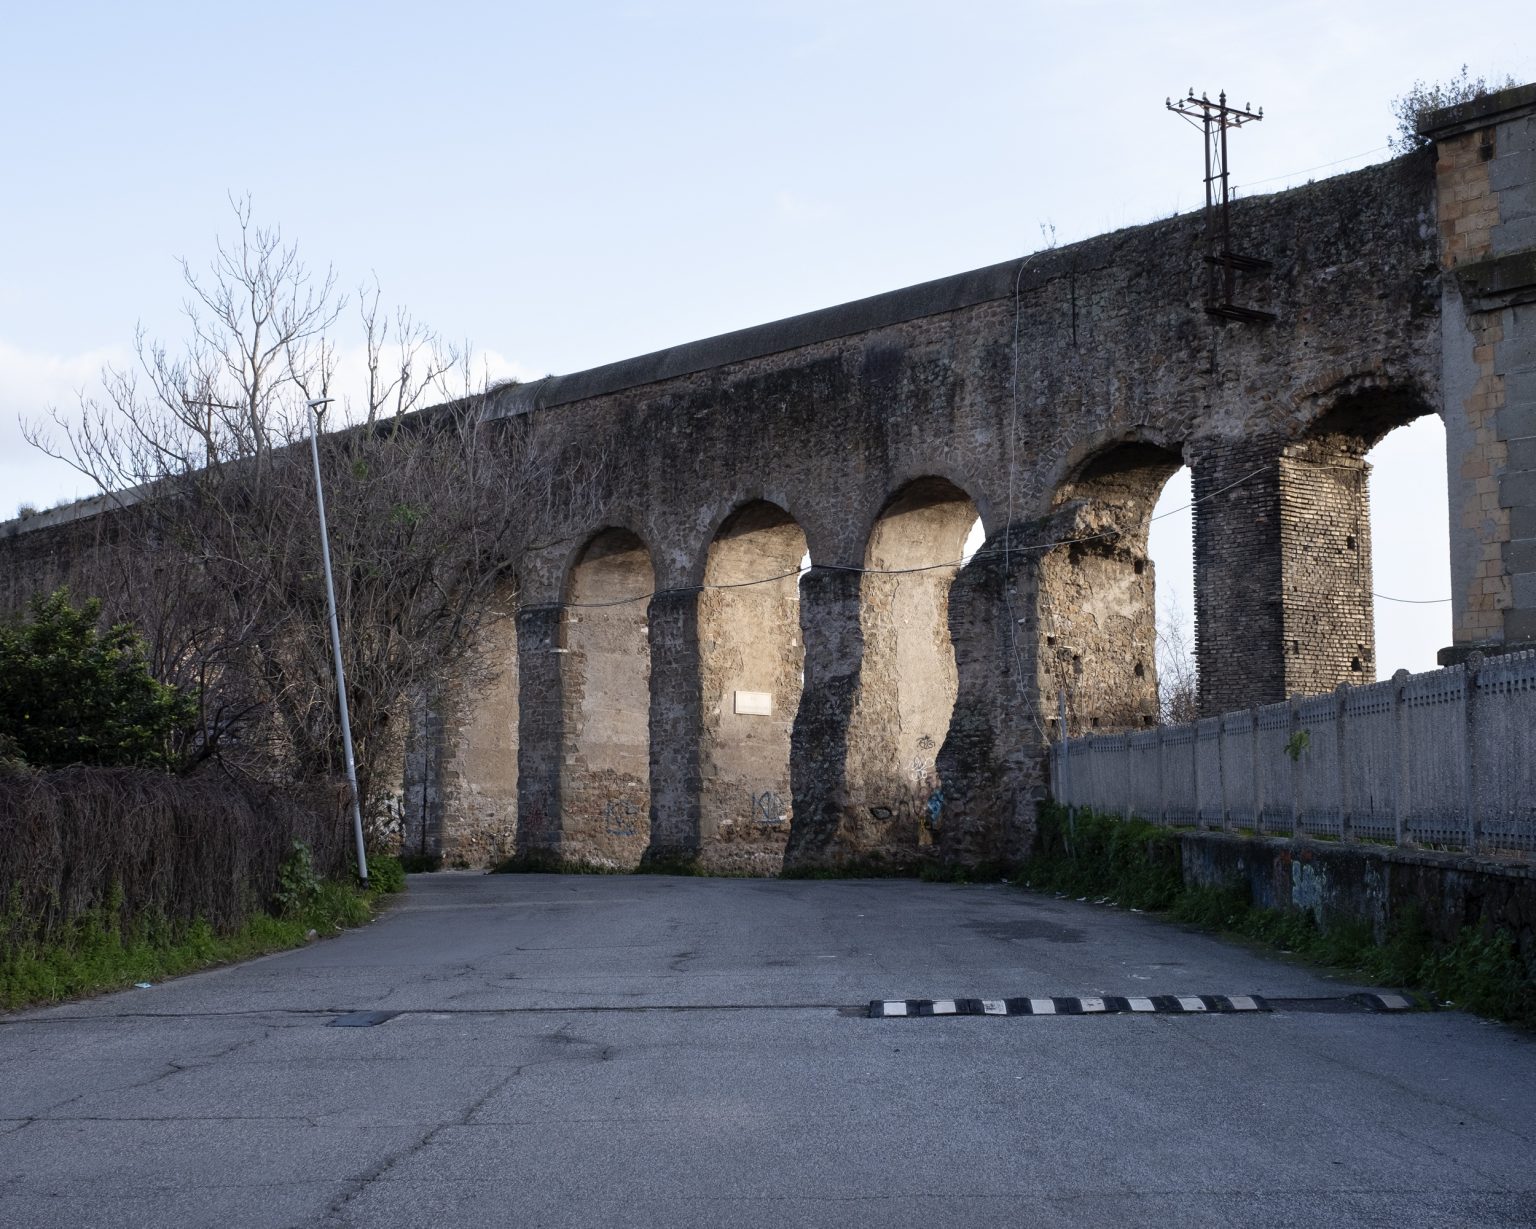 Rome, January 2021 - Arches of Acquedotto Felice on Via Casilina Vecchia
><
Roma, gennaio 2021-  Archi dellacquedotto Felice su via Casilina Vecchia